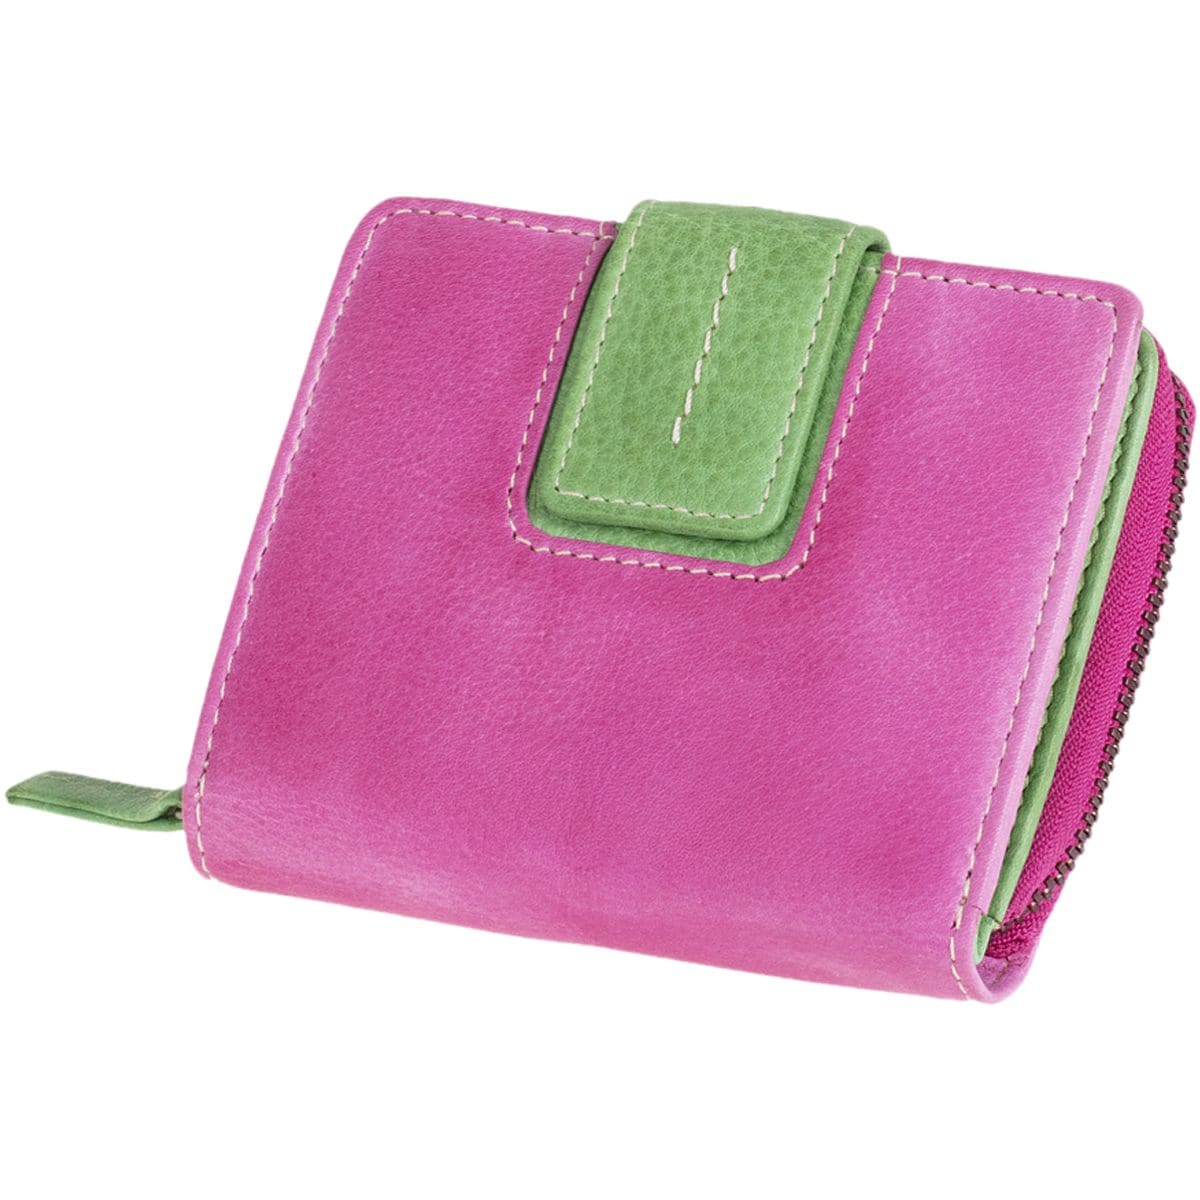 MIKA Damengeldbrse Hochformat mit separatem Mnzfach und 9 Kartenfchern pink-grn